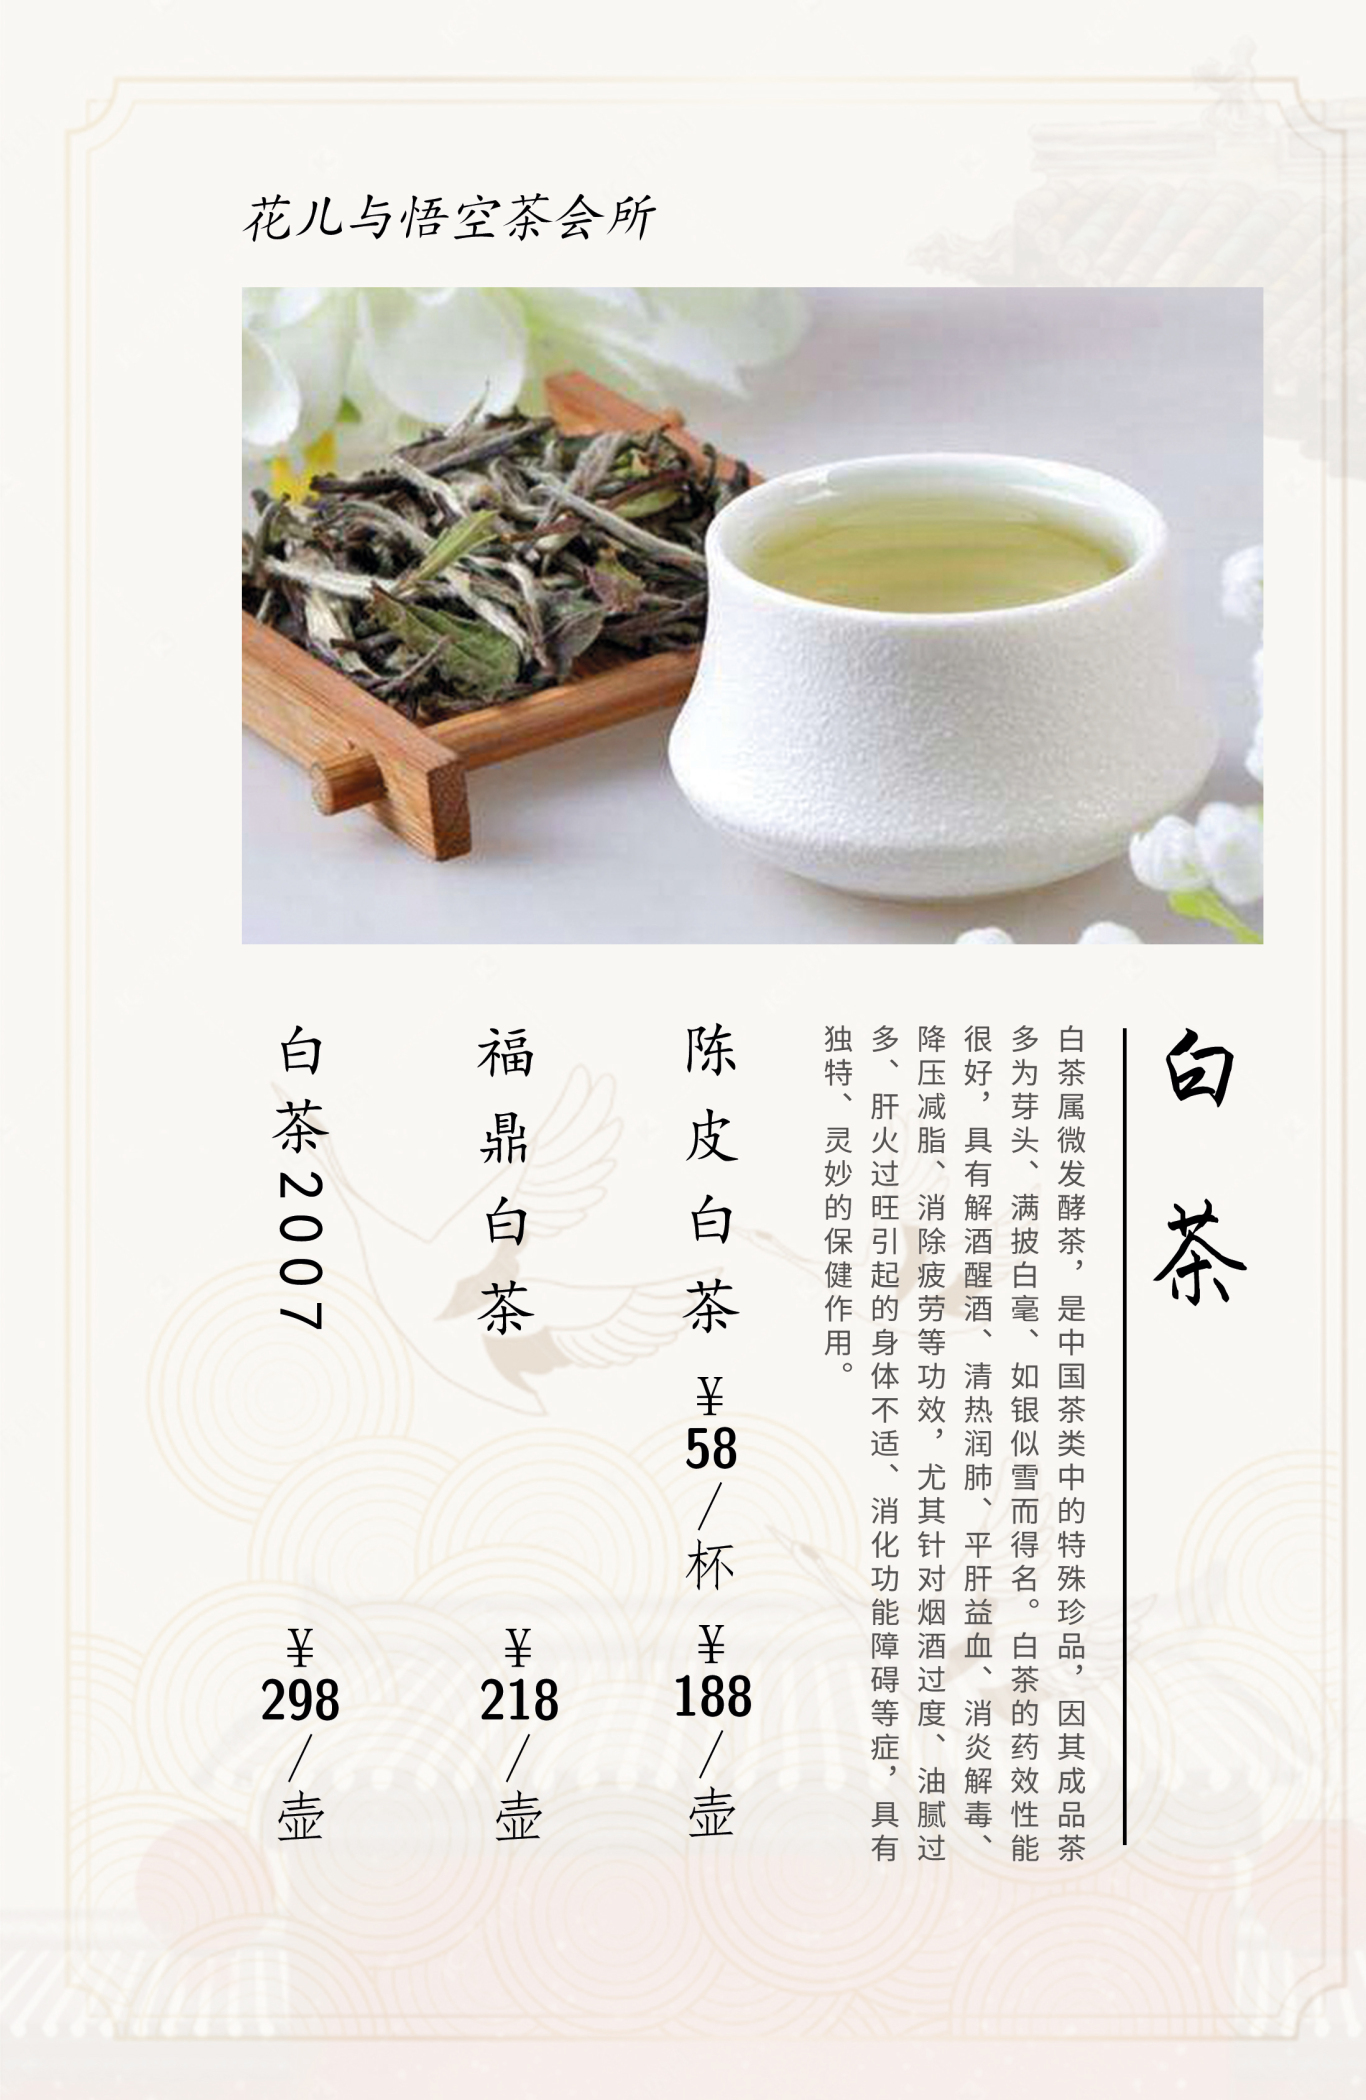 茶水画册图7